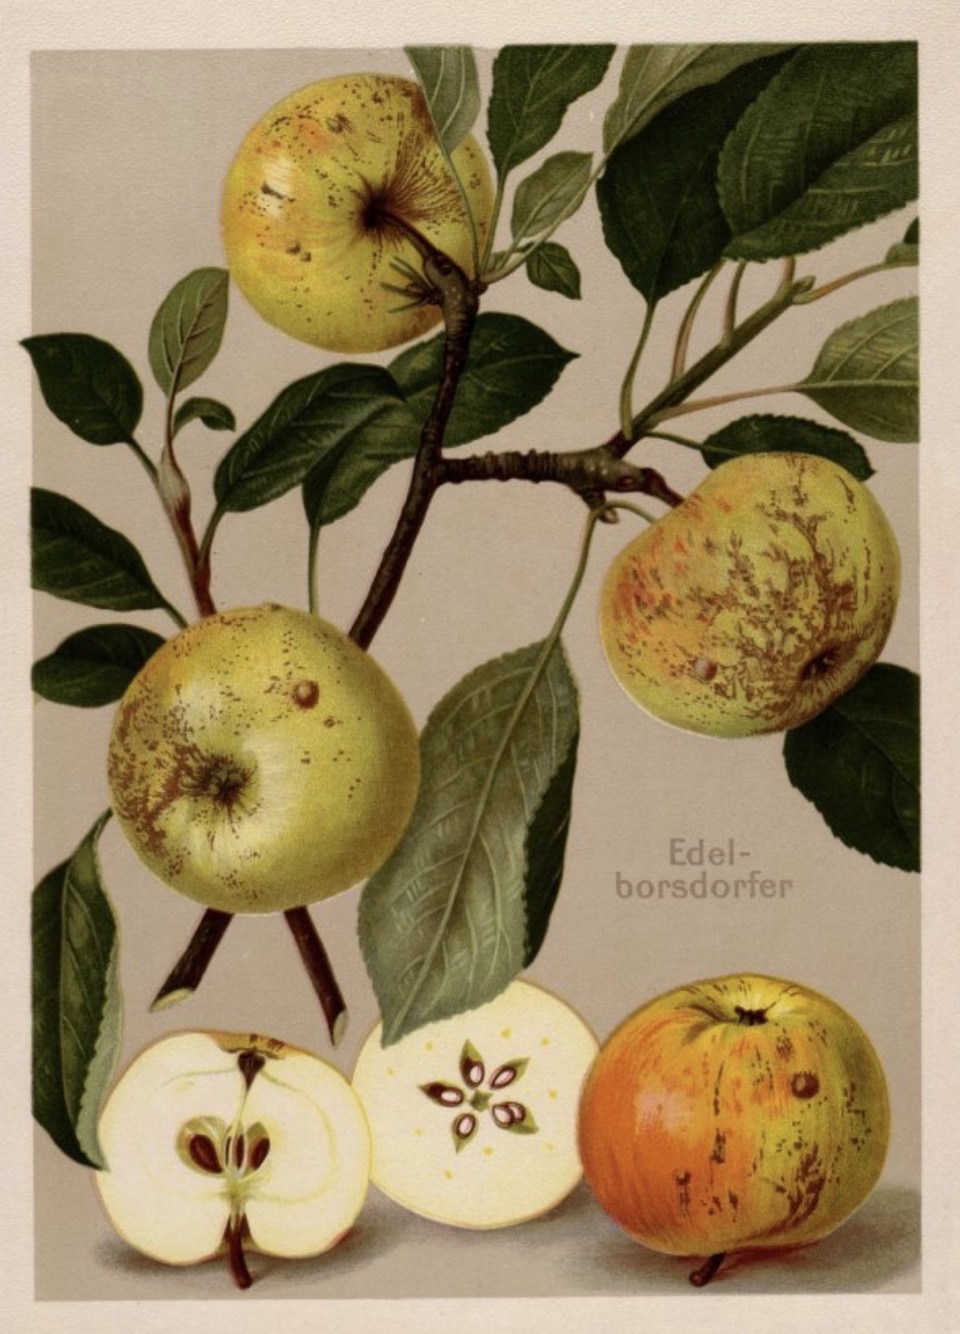 Historische Abbildung eines Zweigs mit drei Äpfeln, sowie einem aufgeschnittenen Apfel; BUND Lemgo Obstsortendatenbank